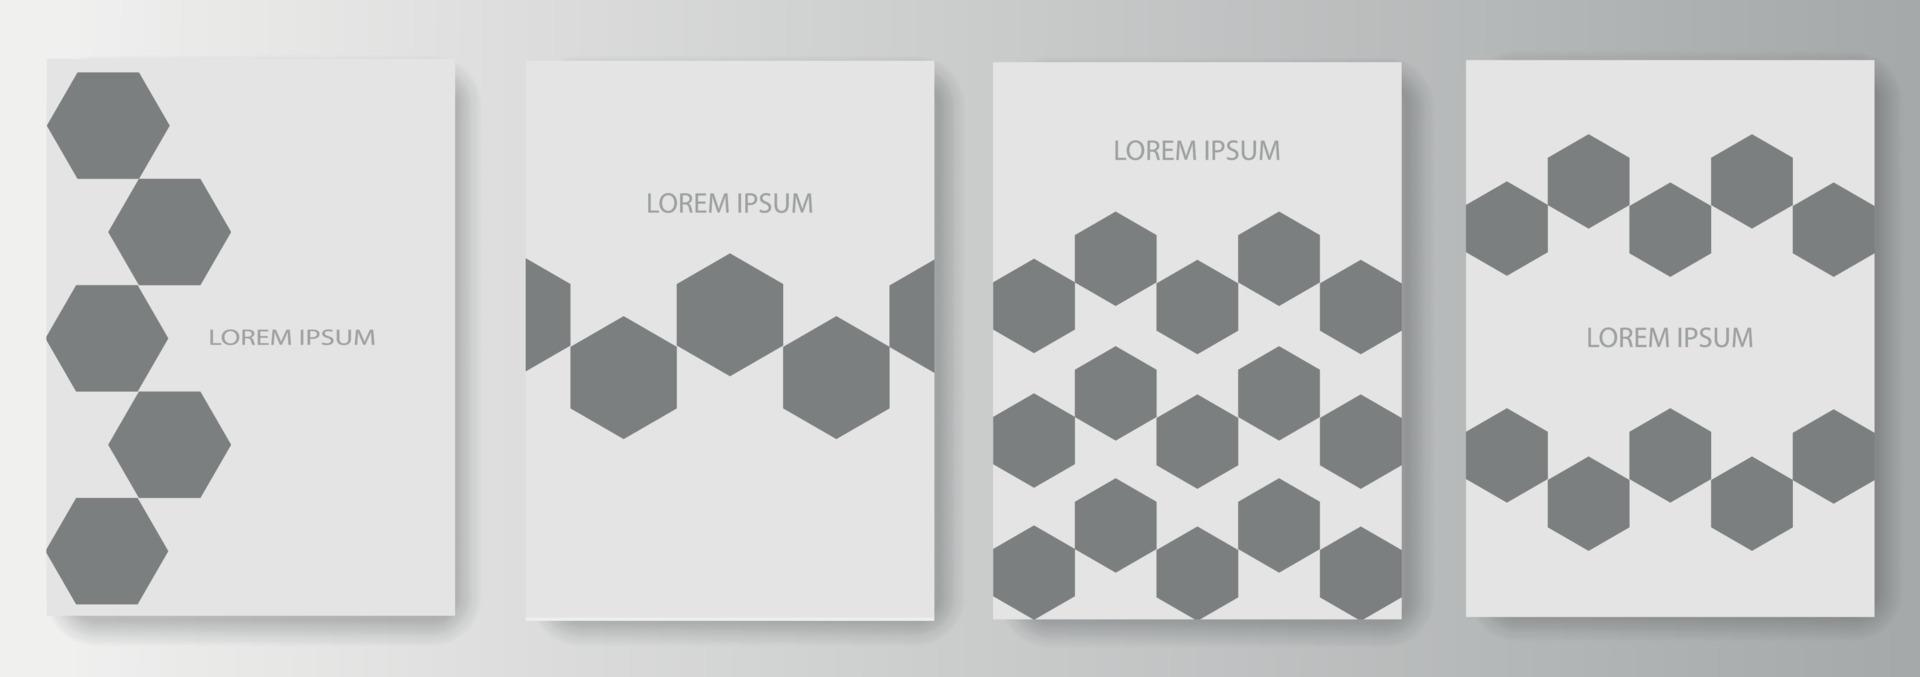 définir la collection d'arrière-plans gris avec des polygones vecteur